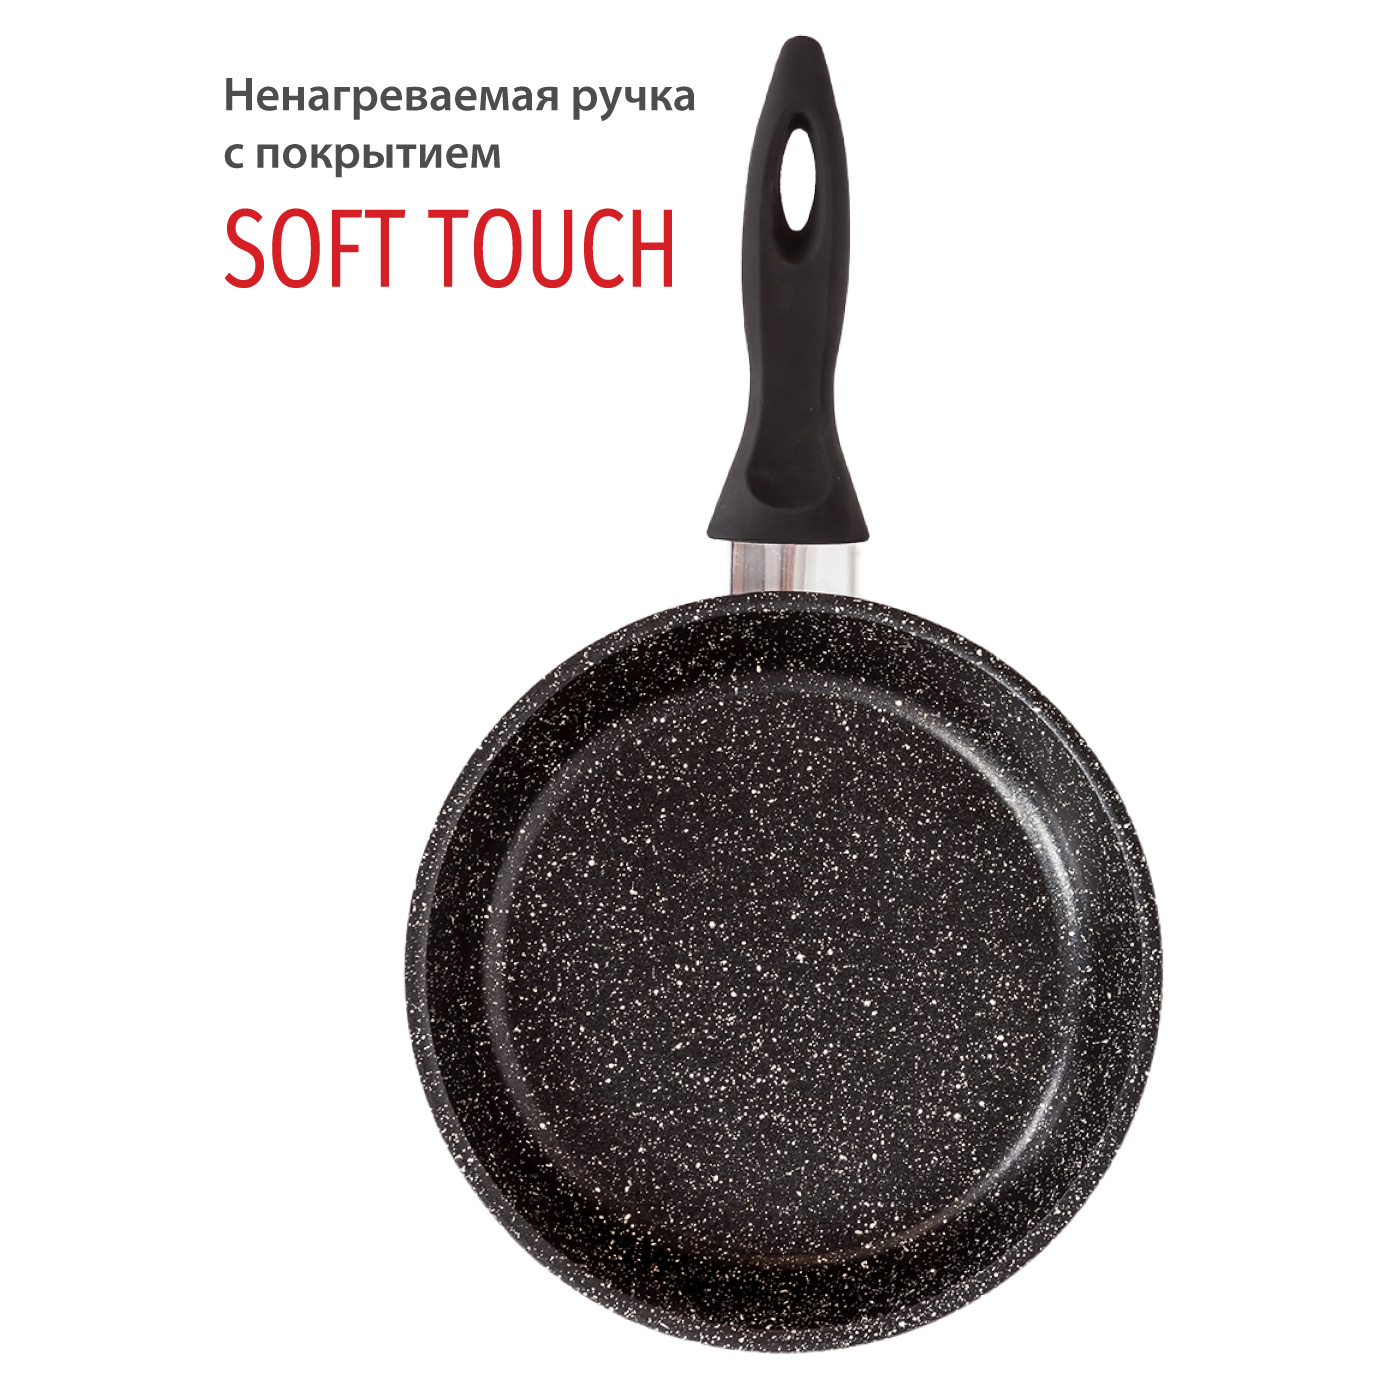 Картинка Сковорода Olivetti FP724 (24 см) по разумной цене купить в интернет магазине mall.su